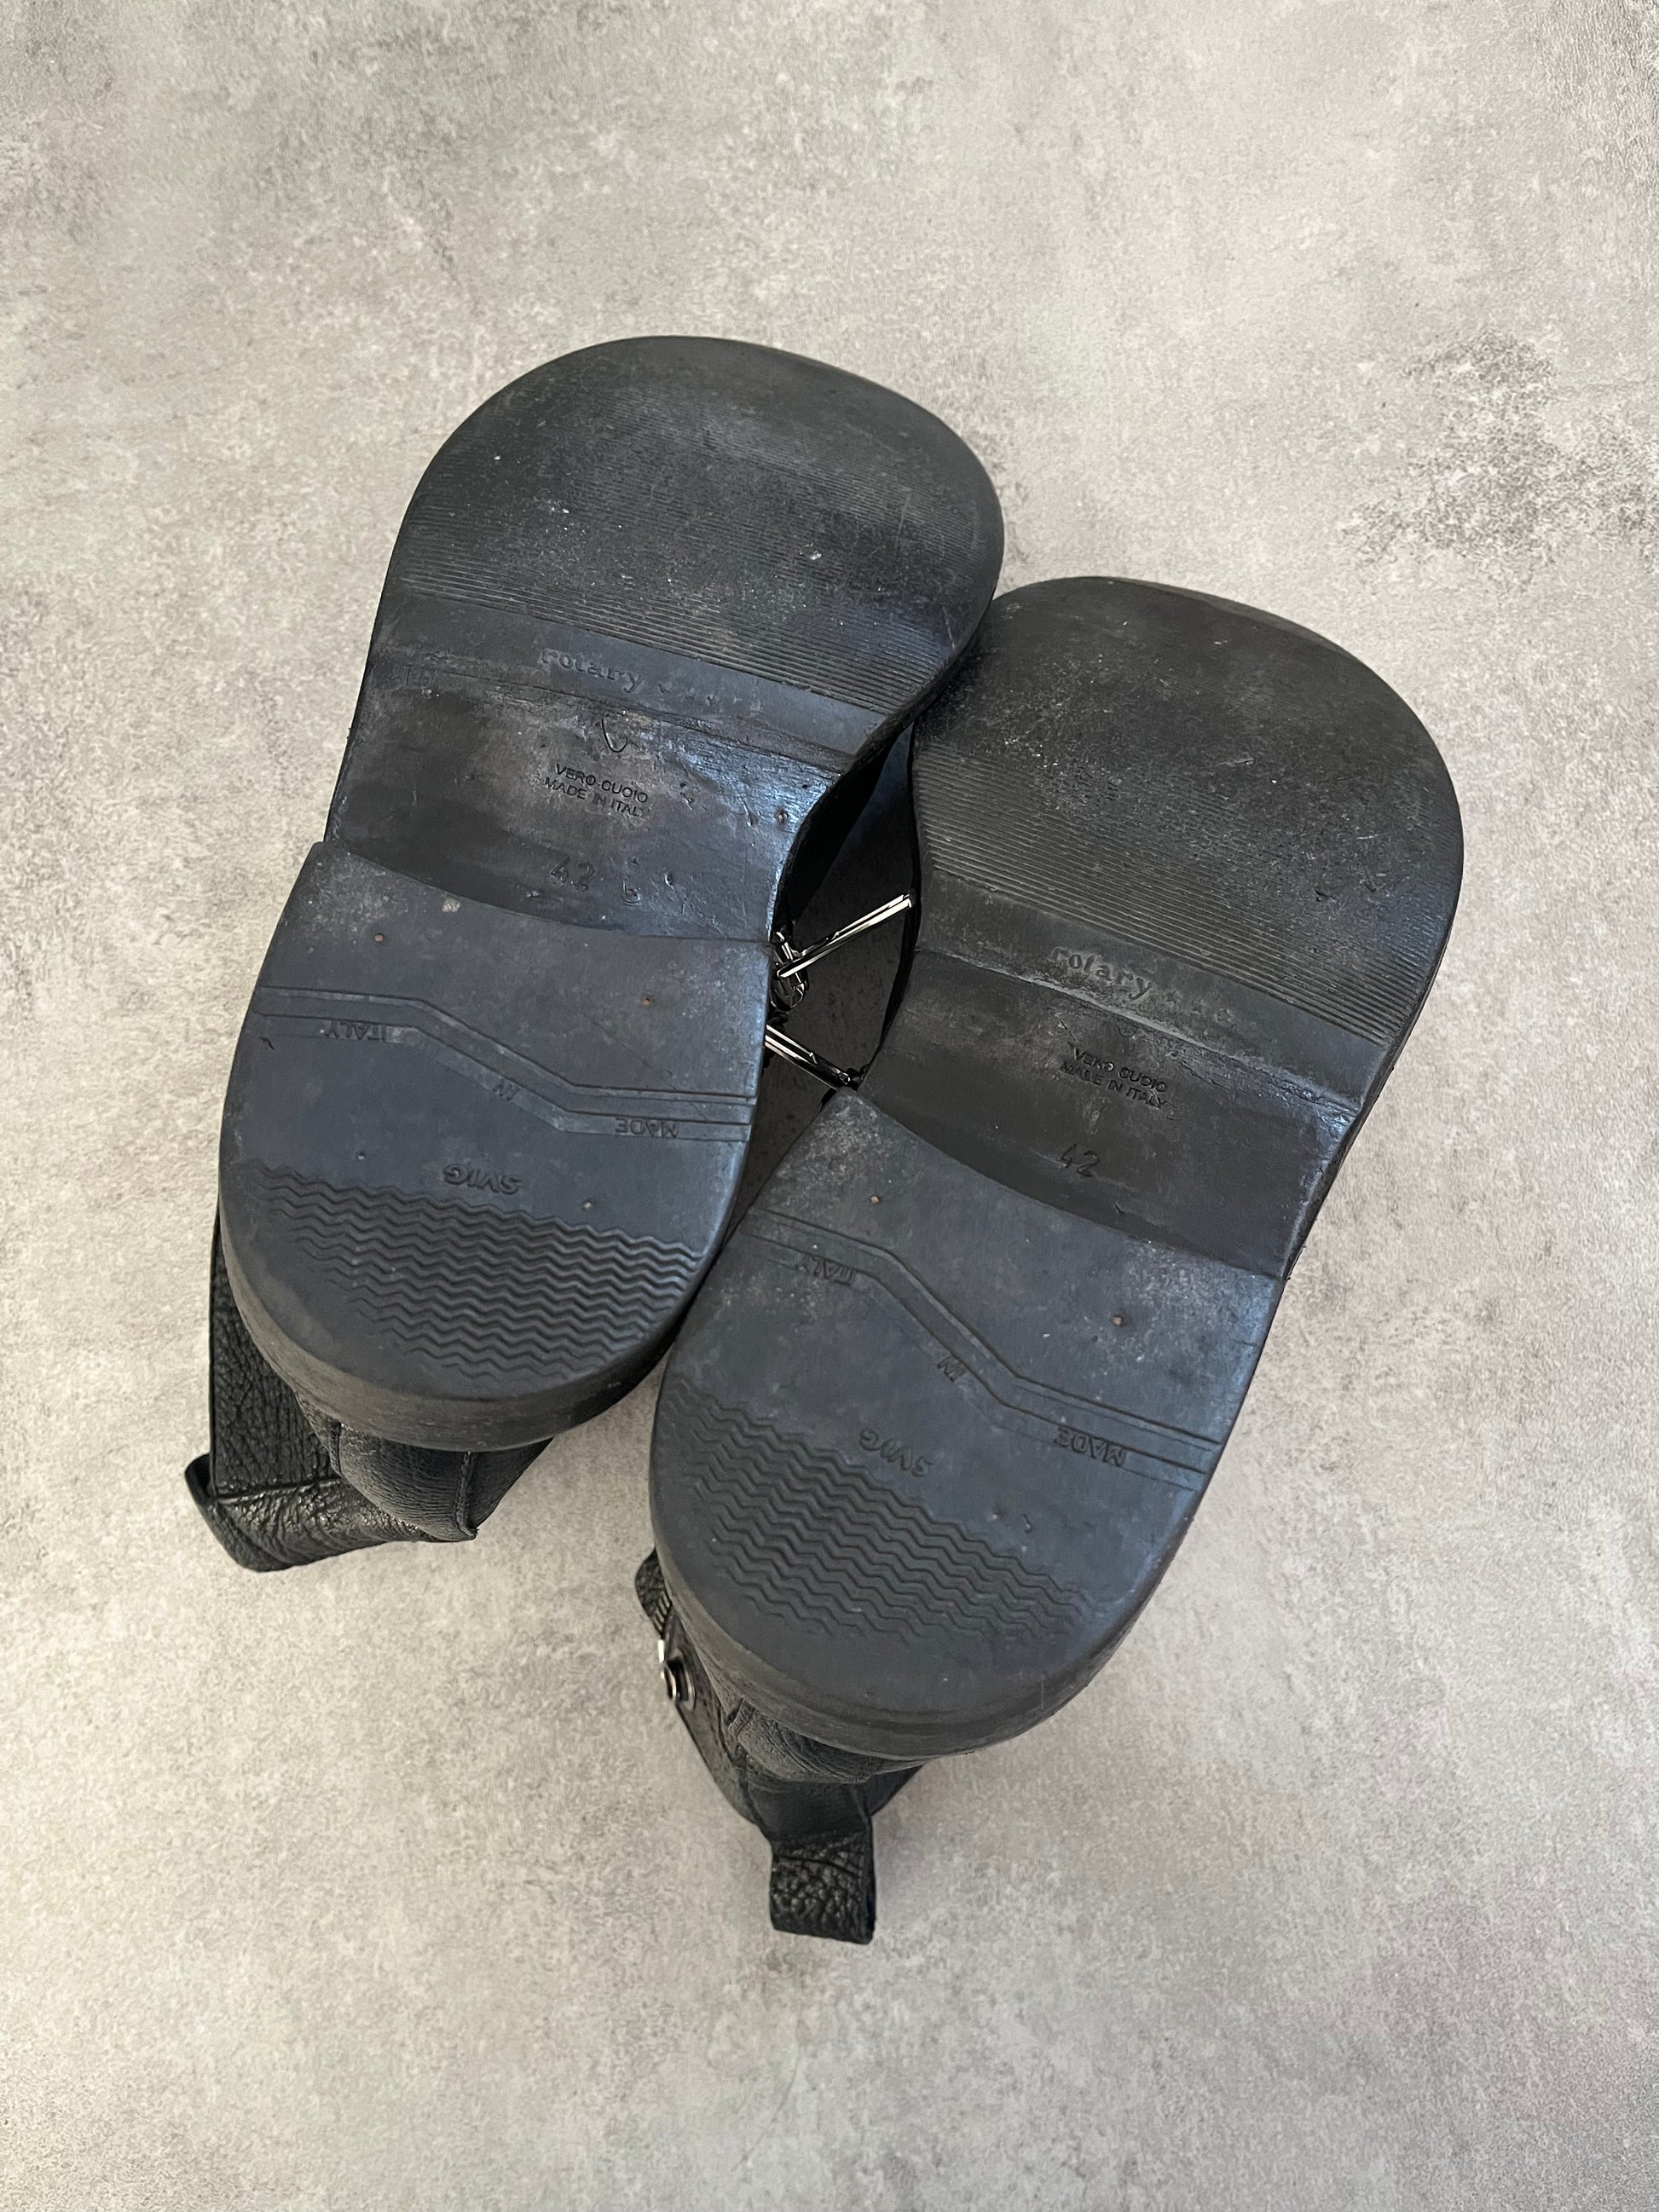 Rick Owens Rotary Zipped Leather Boots (42eu/us8.5)  (42) - 4